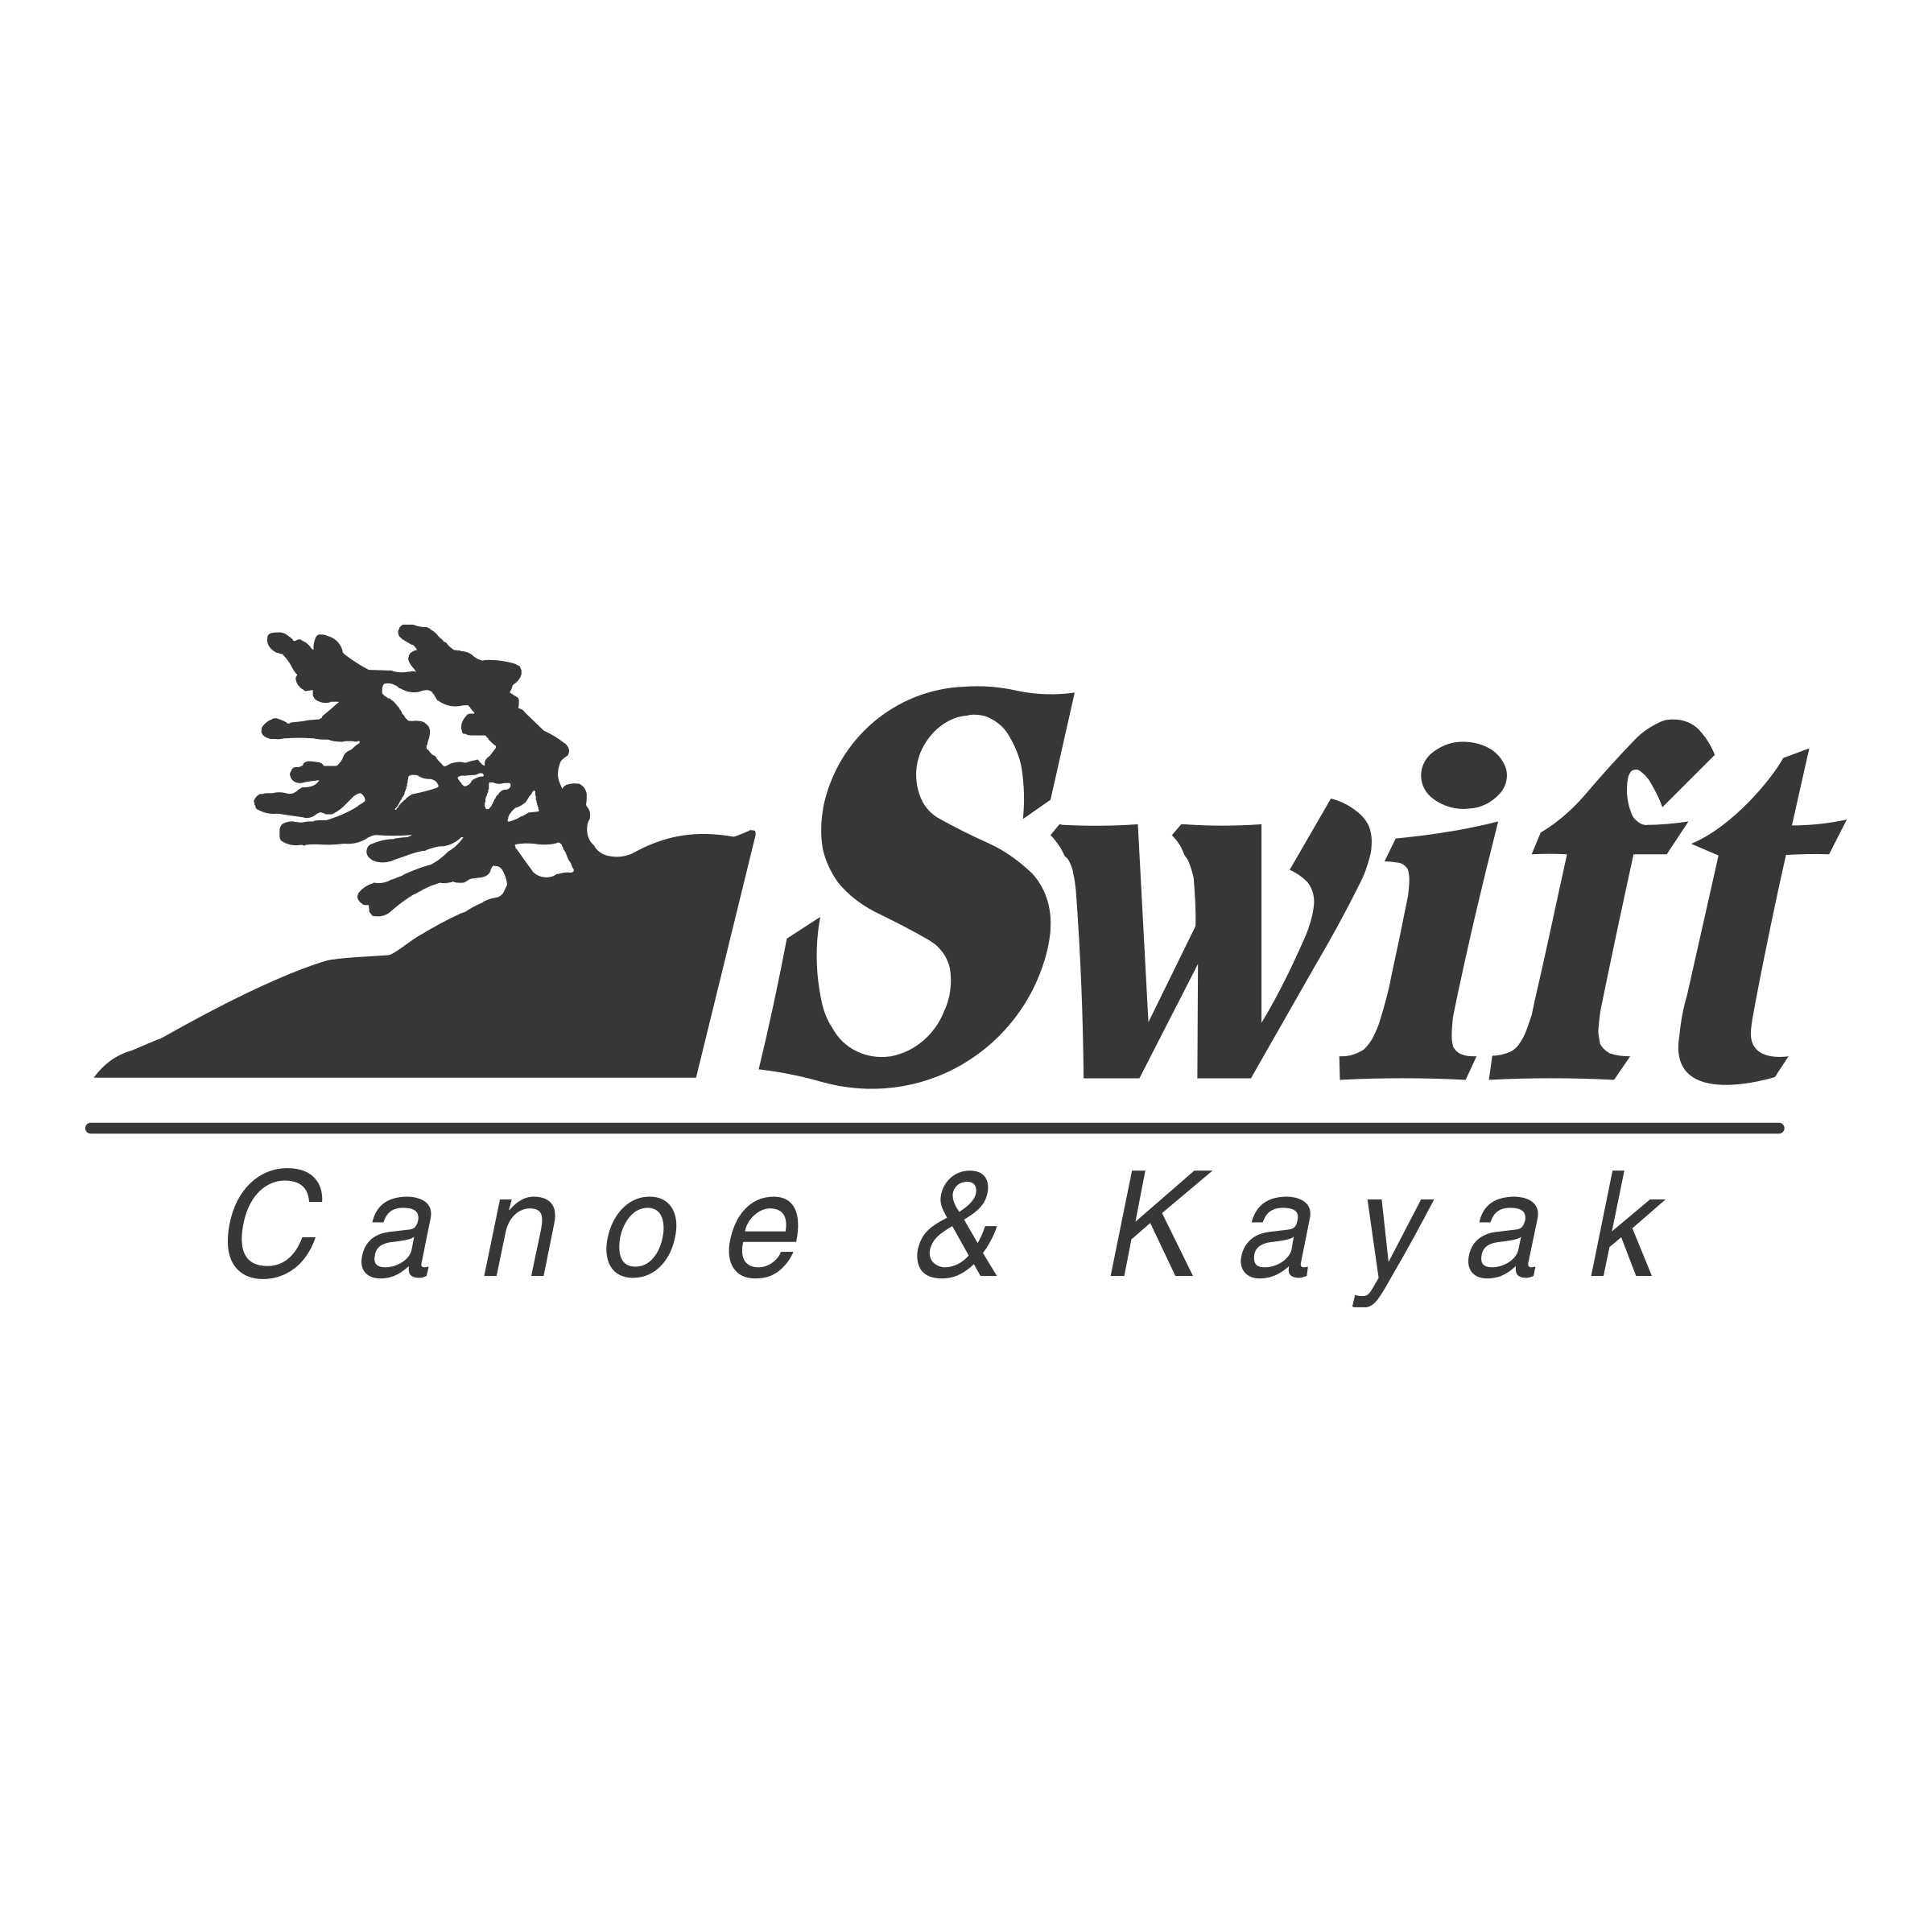 Kyak Logo - Swift Canoe & Kayak Logo PNG Transparent & SVG Vector